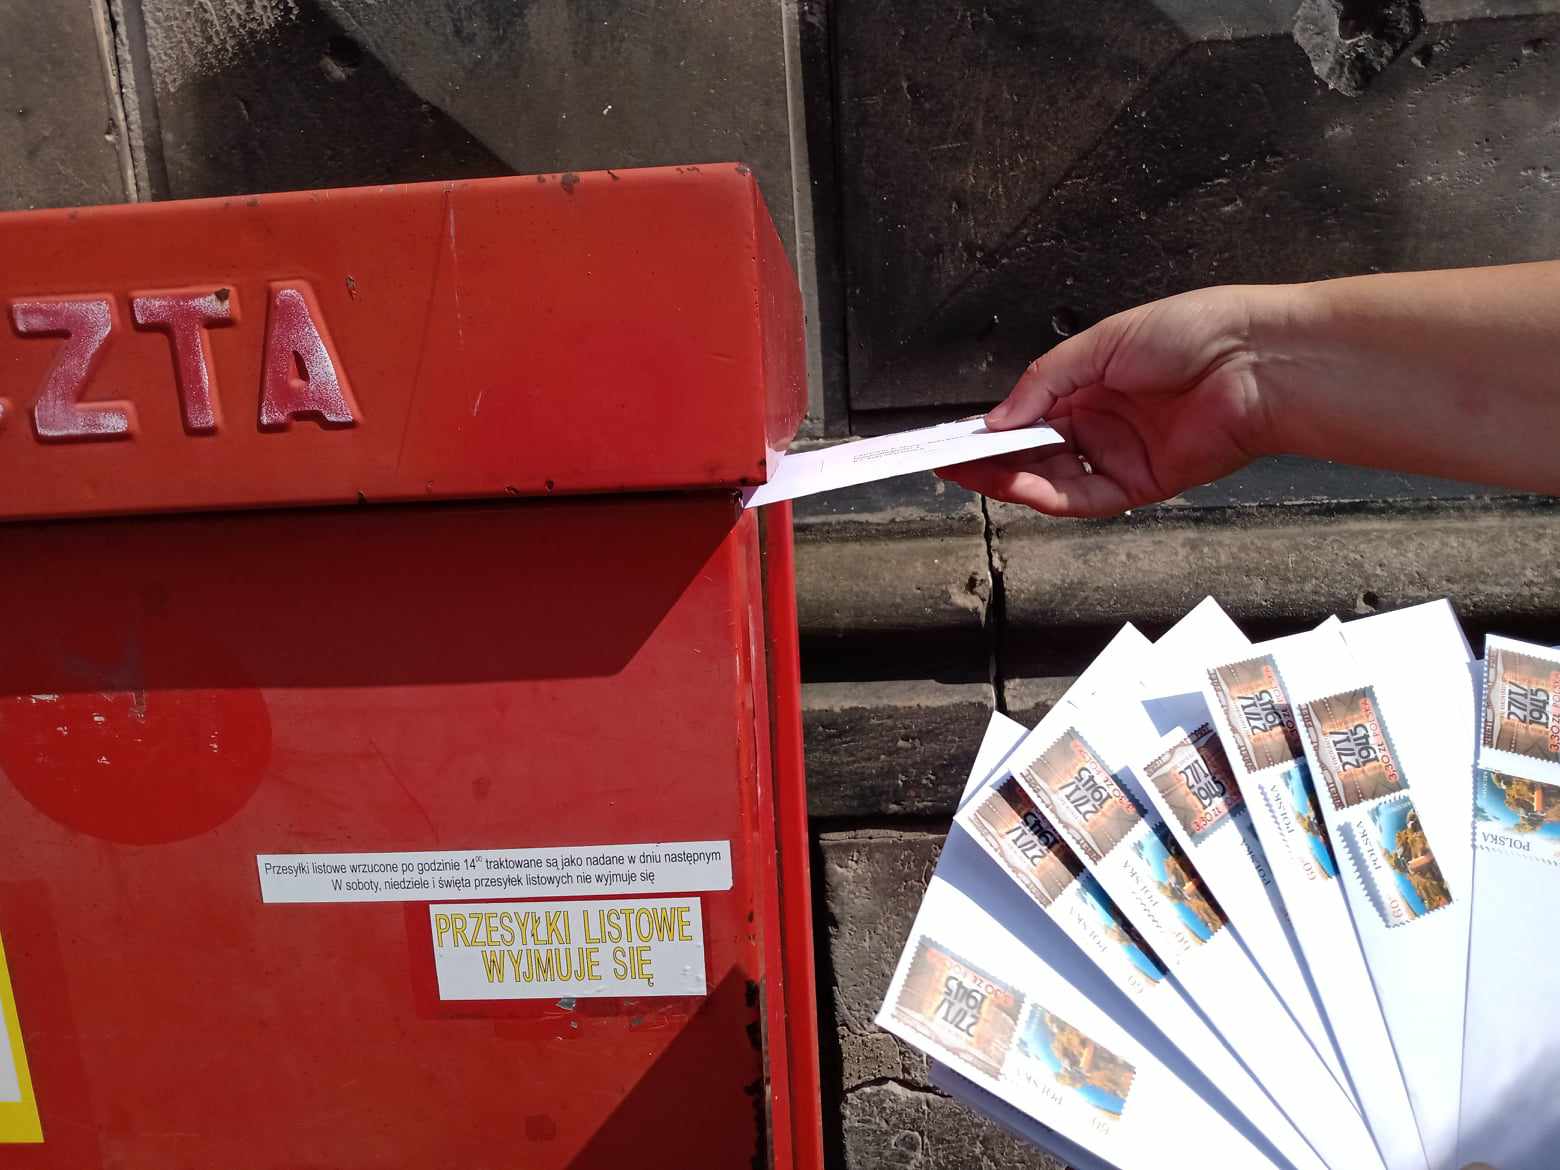 Zdjęcie zaadresowanych kopert oraz ręki liderki Pracowni Orange wkładającej jedną kopertę do skrzynki pocztowej